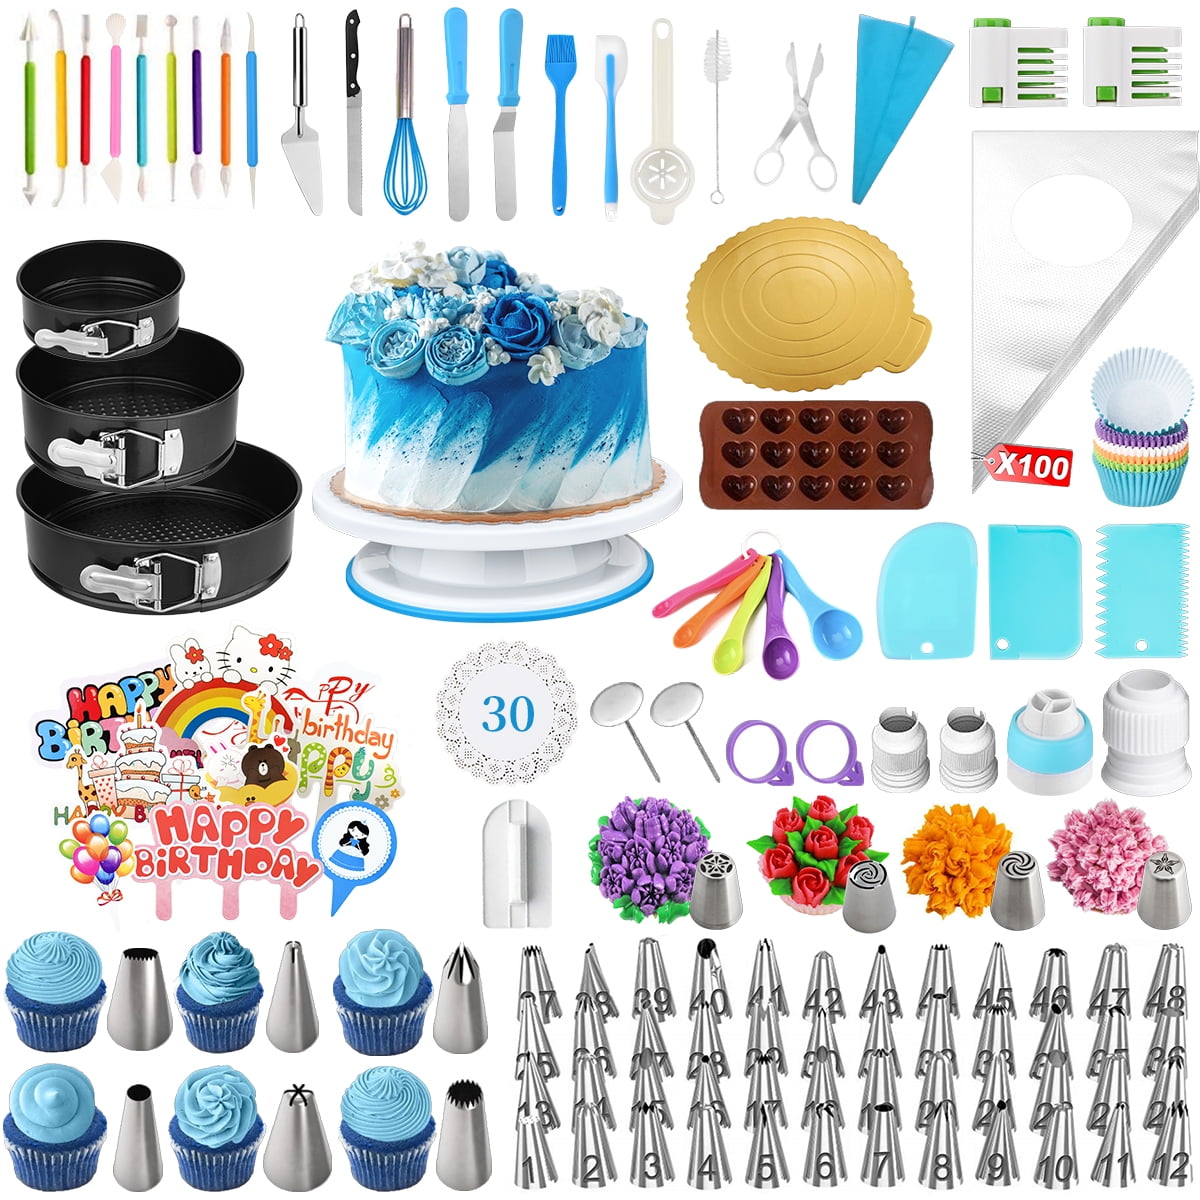 RFAQK 700pcs Cake Decorating Supplies Kit with Baking Supplies- Cake Decorating Tools with Springform Pans, Cake Leveler, Turntable, Numbered Piping